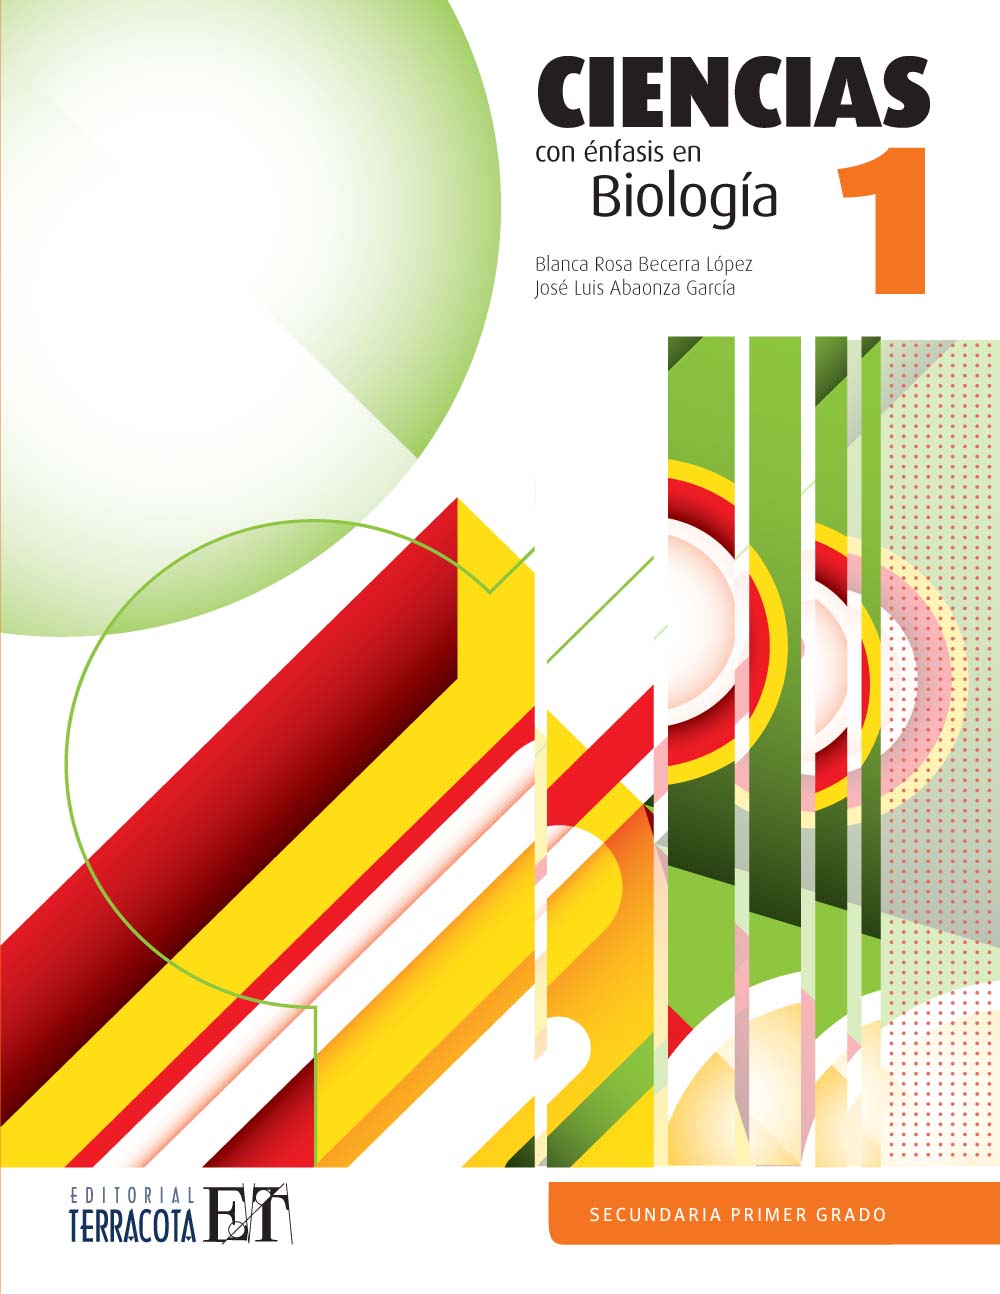 Ciencias 1. Biología, Editorial: Terracota, Nivel: Secundaria, Grado: 1